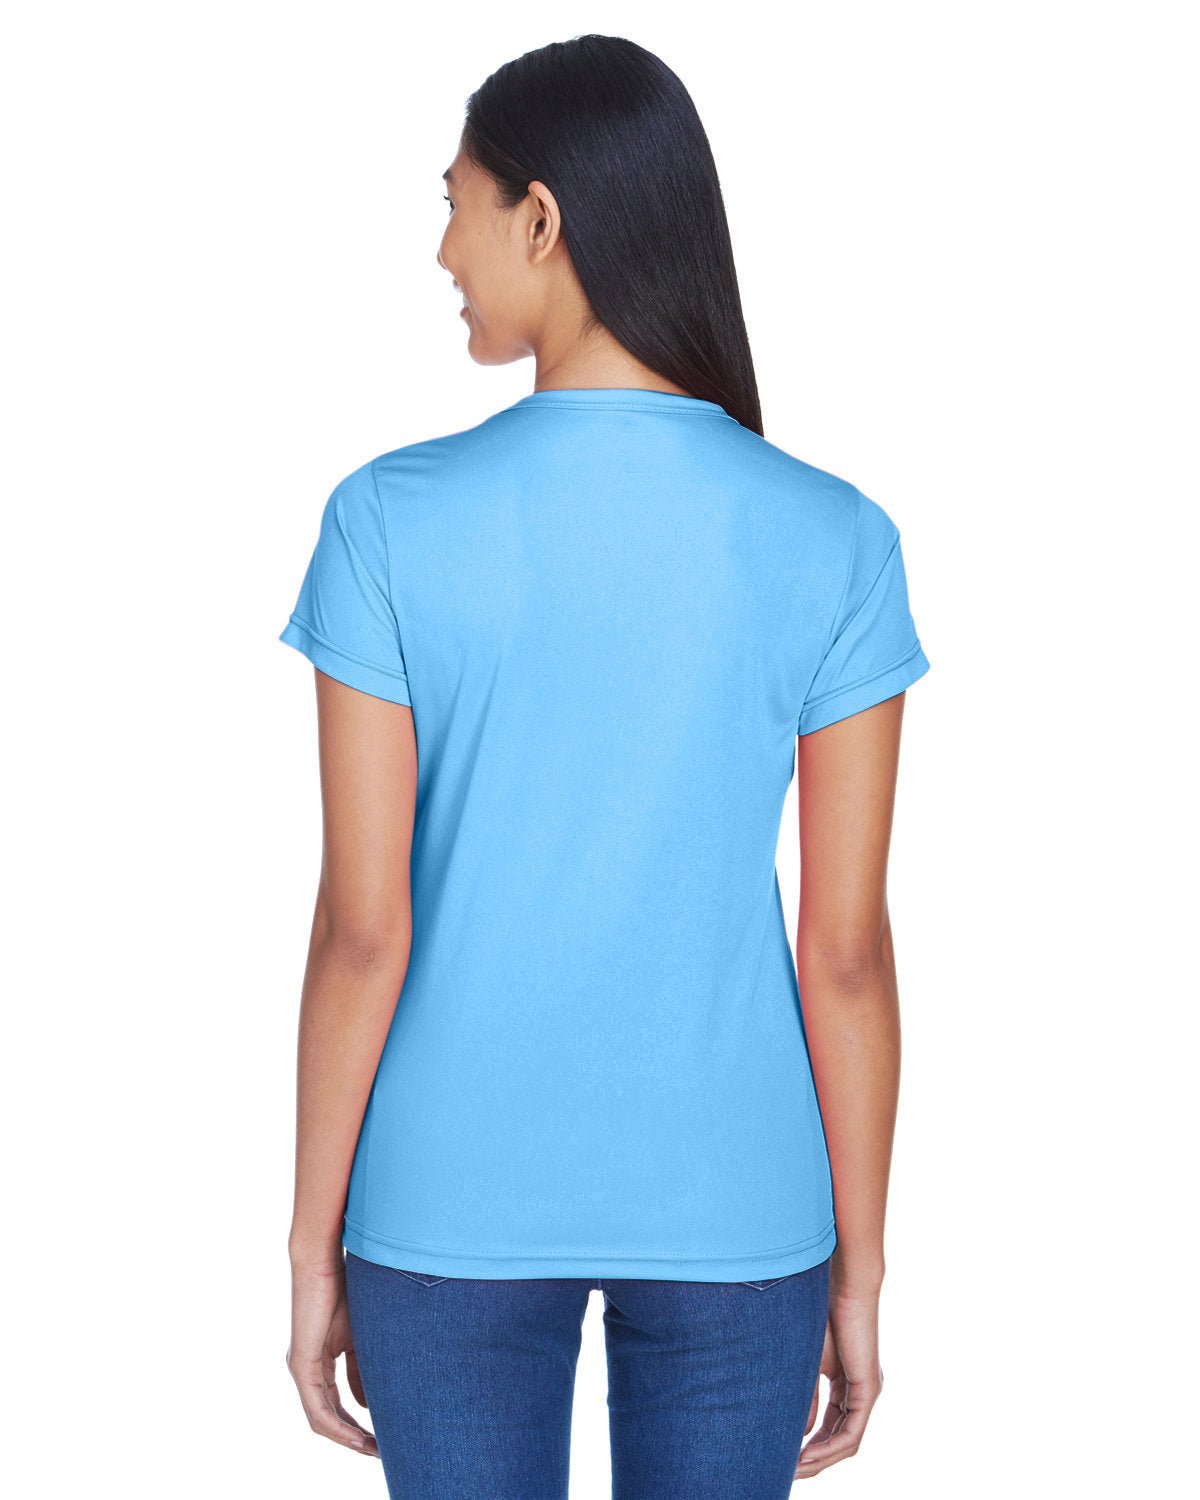 8420L-UltraClub-COLUMBIA BLUE-UltraClub-T-Shirts-2